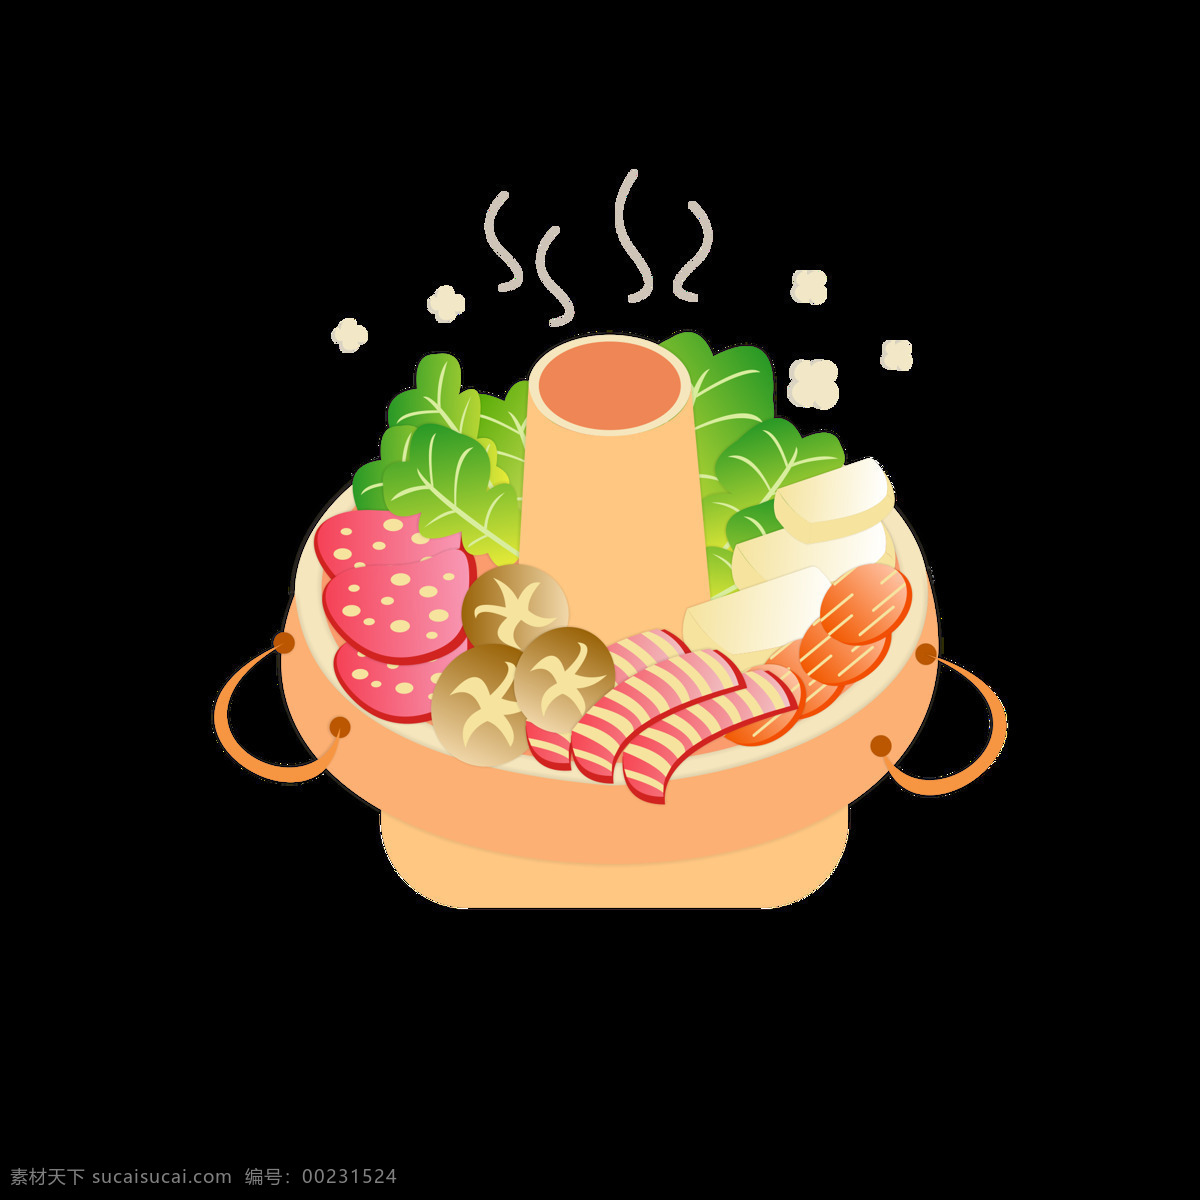 冬季 美食 卡通 可爱 火锅 元素 卡通可爱 节日 元素设计 肉菜 大餐 热腾腾